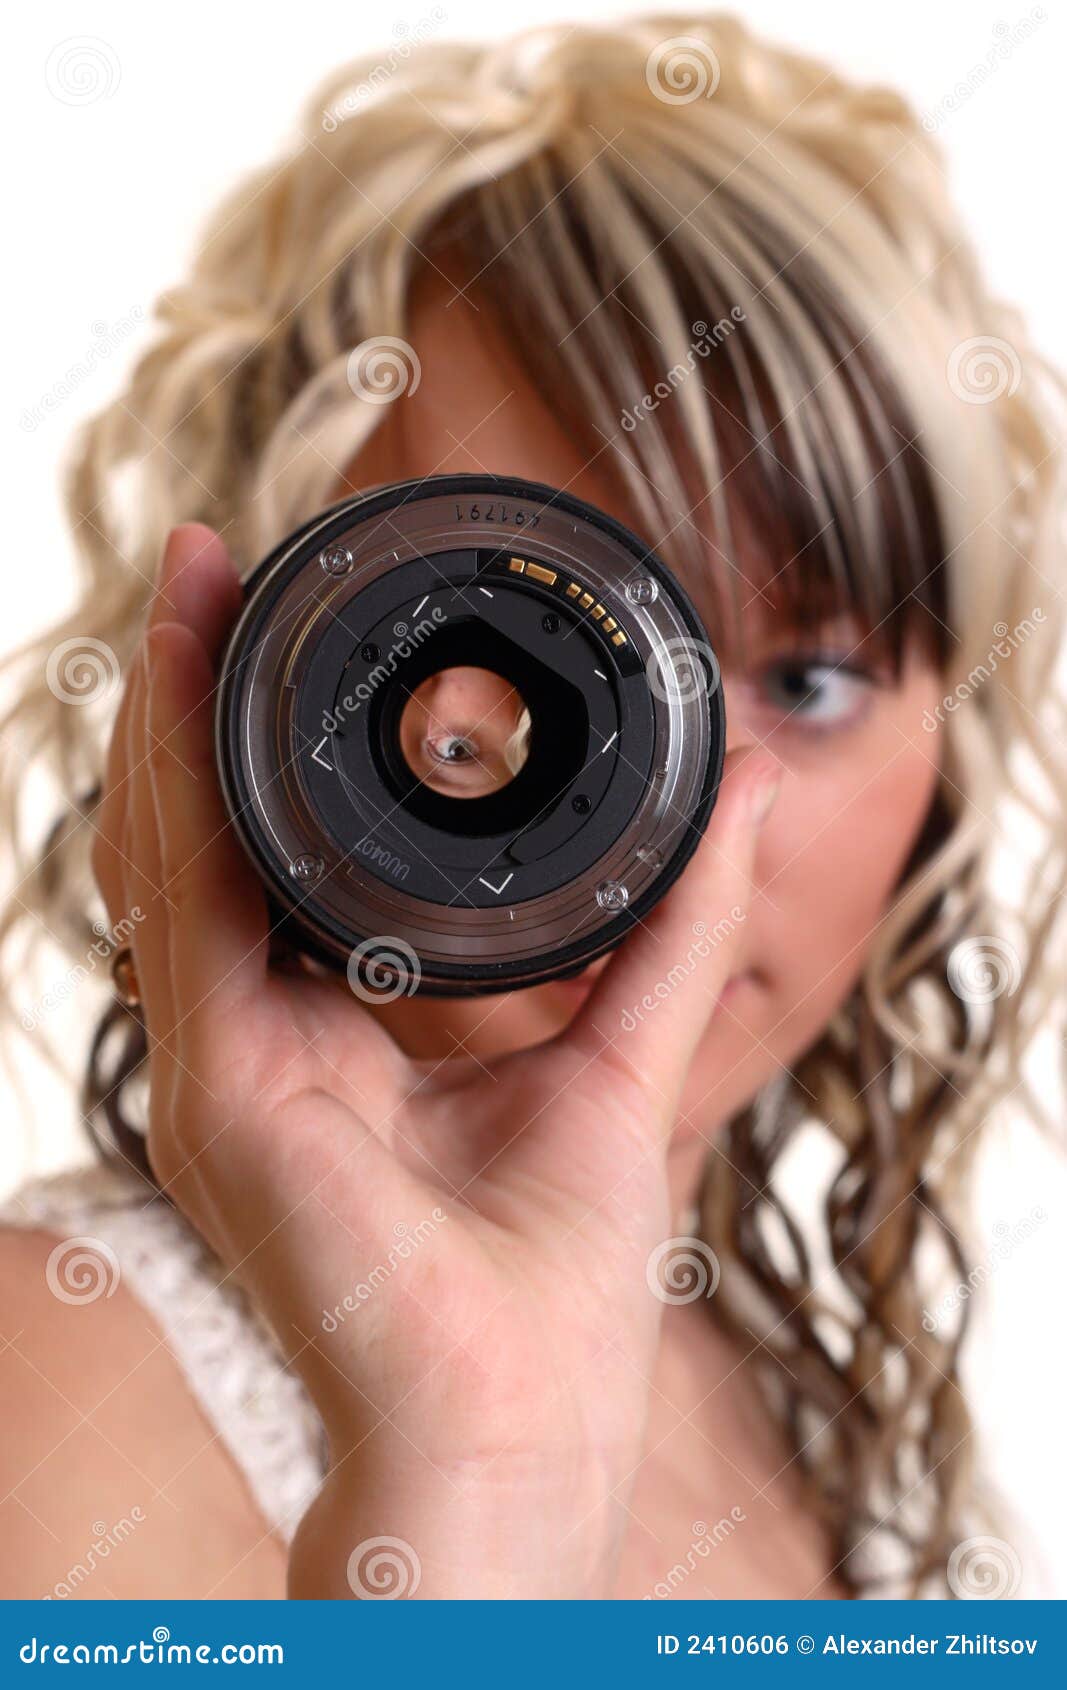 girl examine lense